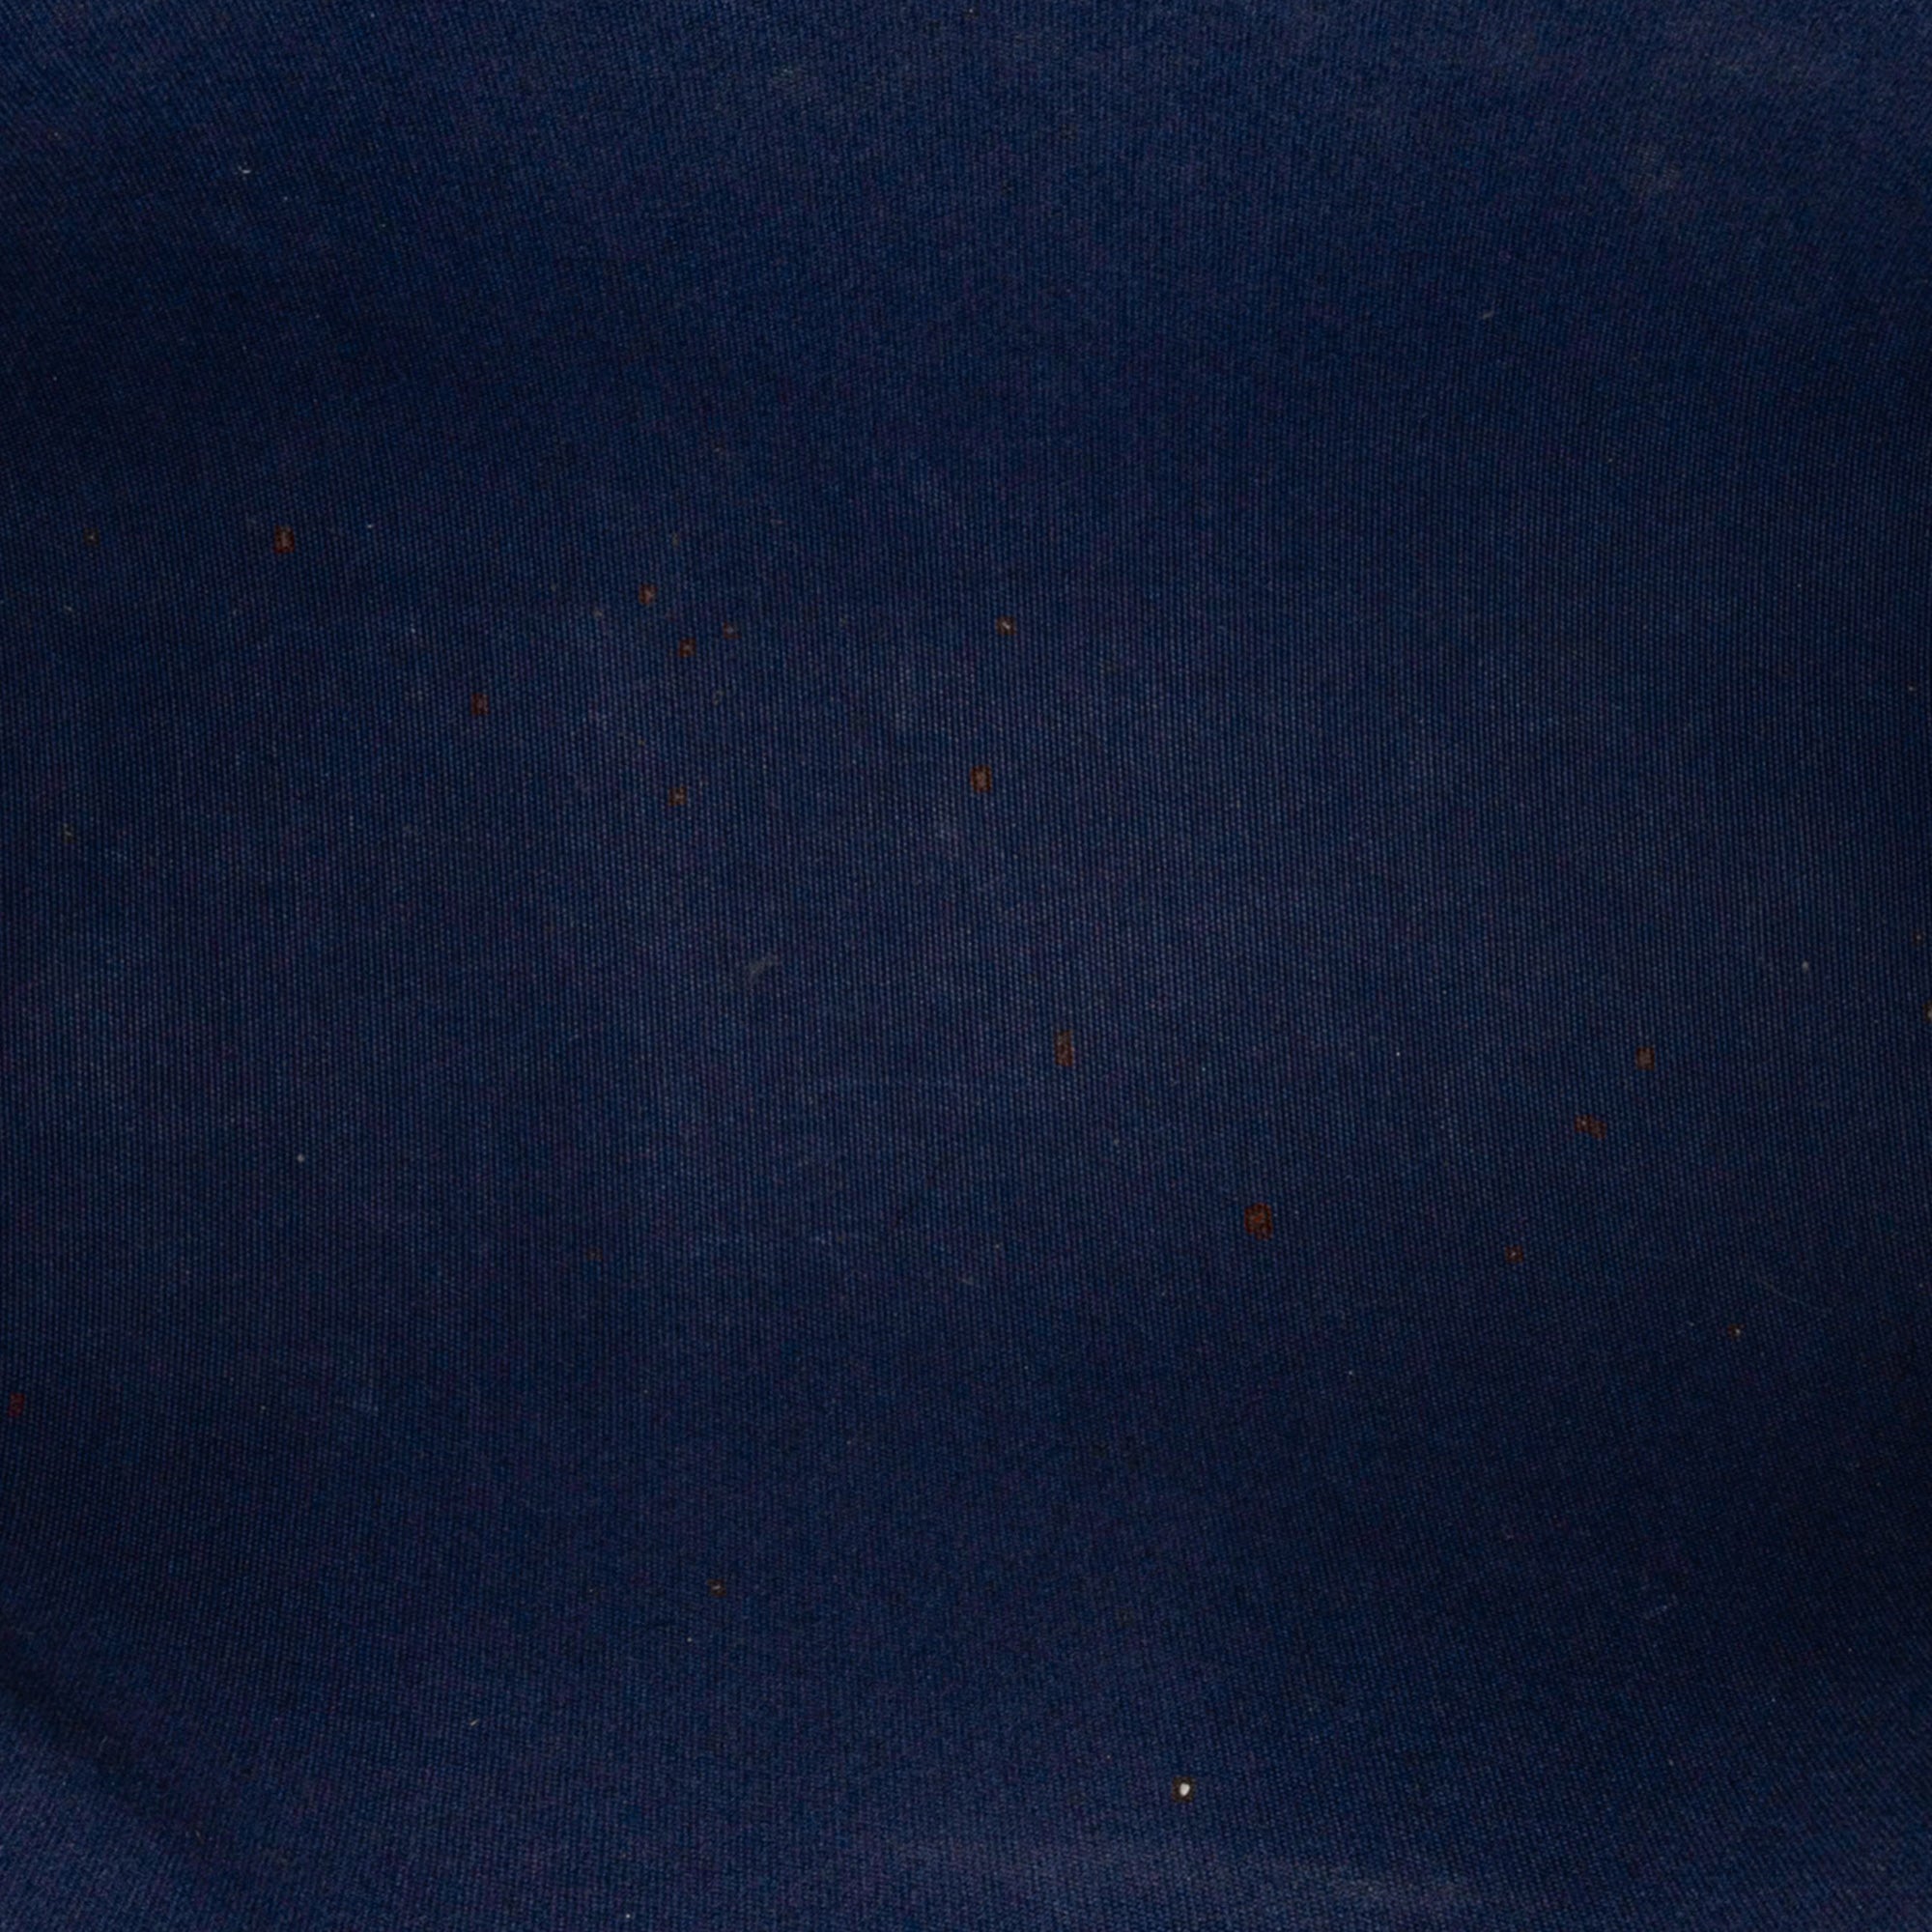 Louis Vuitton Monogram Vernis Ikat Catalina BB Grand Bleu